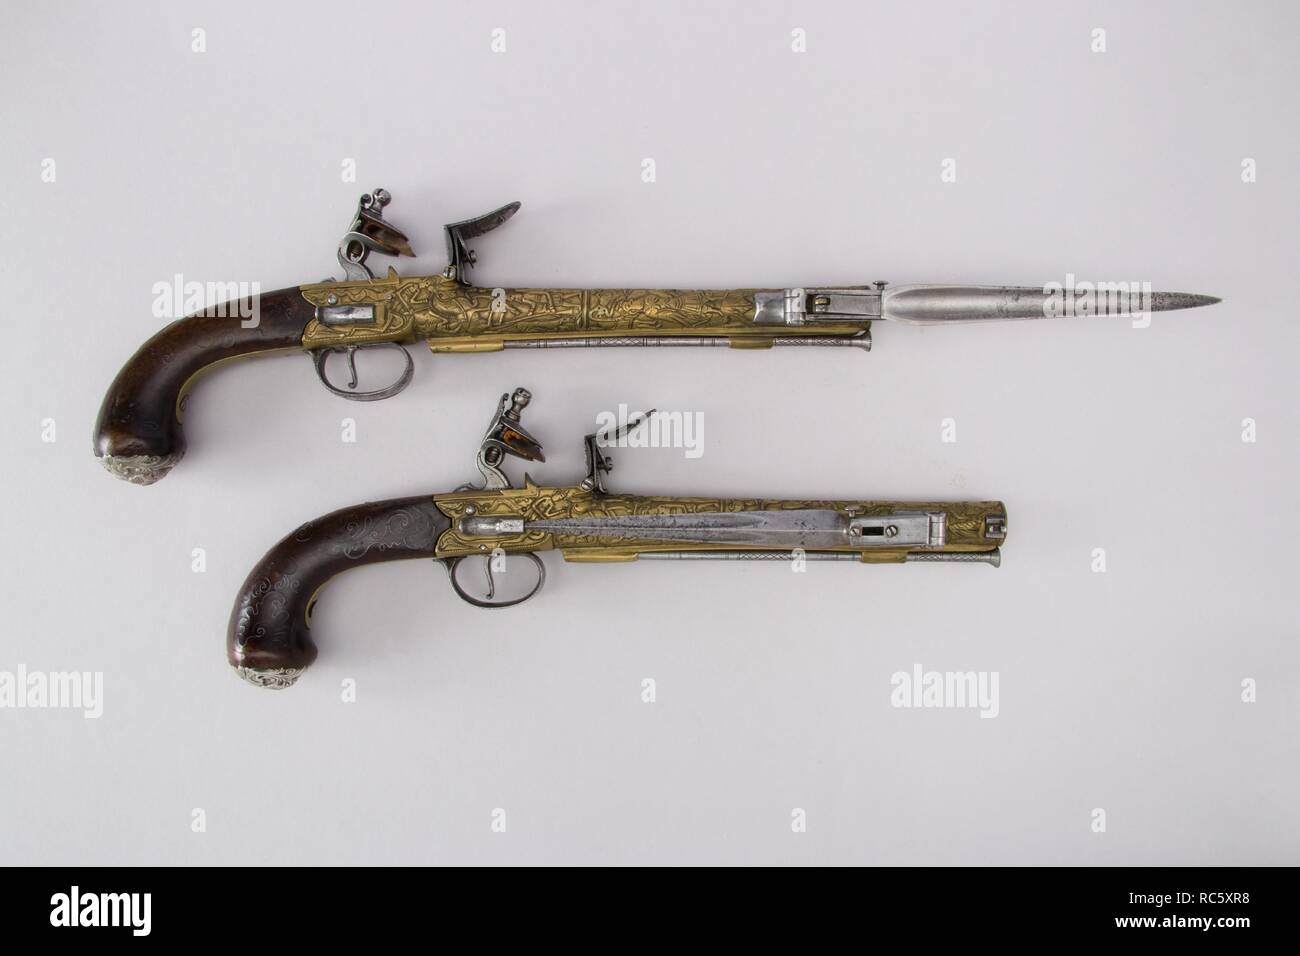 Paire de pistolets à silex Box-Lock avec des baïonnettes. Culture : britanniques et espagnols. Dimensions : 19.53.17 ; L. 15 1/6 in. (38,3 cm) ; L. de baril 8 15/16 in. (22,7 cm) ; Cal. 0,64 in. (17 mm) ; WT. 2 lb. 5 oz. (1048.9 g) ; 19.53.18 ; L. 14 15/16 in. (37,9 cm) ; L. de baril 8 7/8 in. (22,5 cm) ; Cal. .67 dans. (17 mm) ; WT. 2 lb. 5 oz. (1048.9 g). Date : ca. 1782. Musée : Metropolitan Museum of Art, New York, USA. Banque D'Images